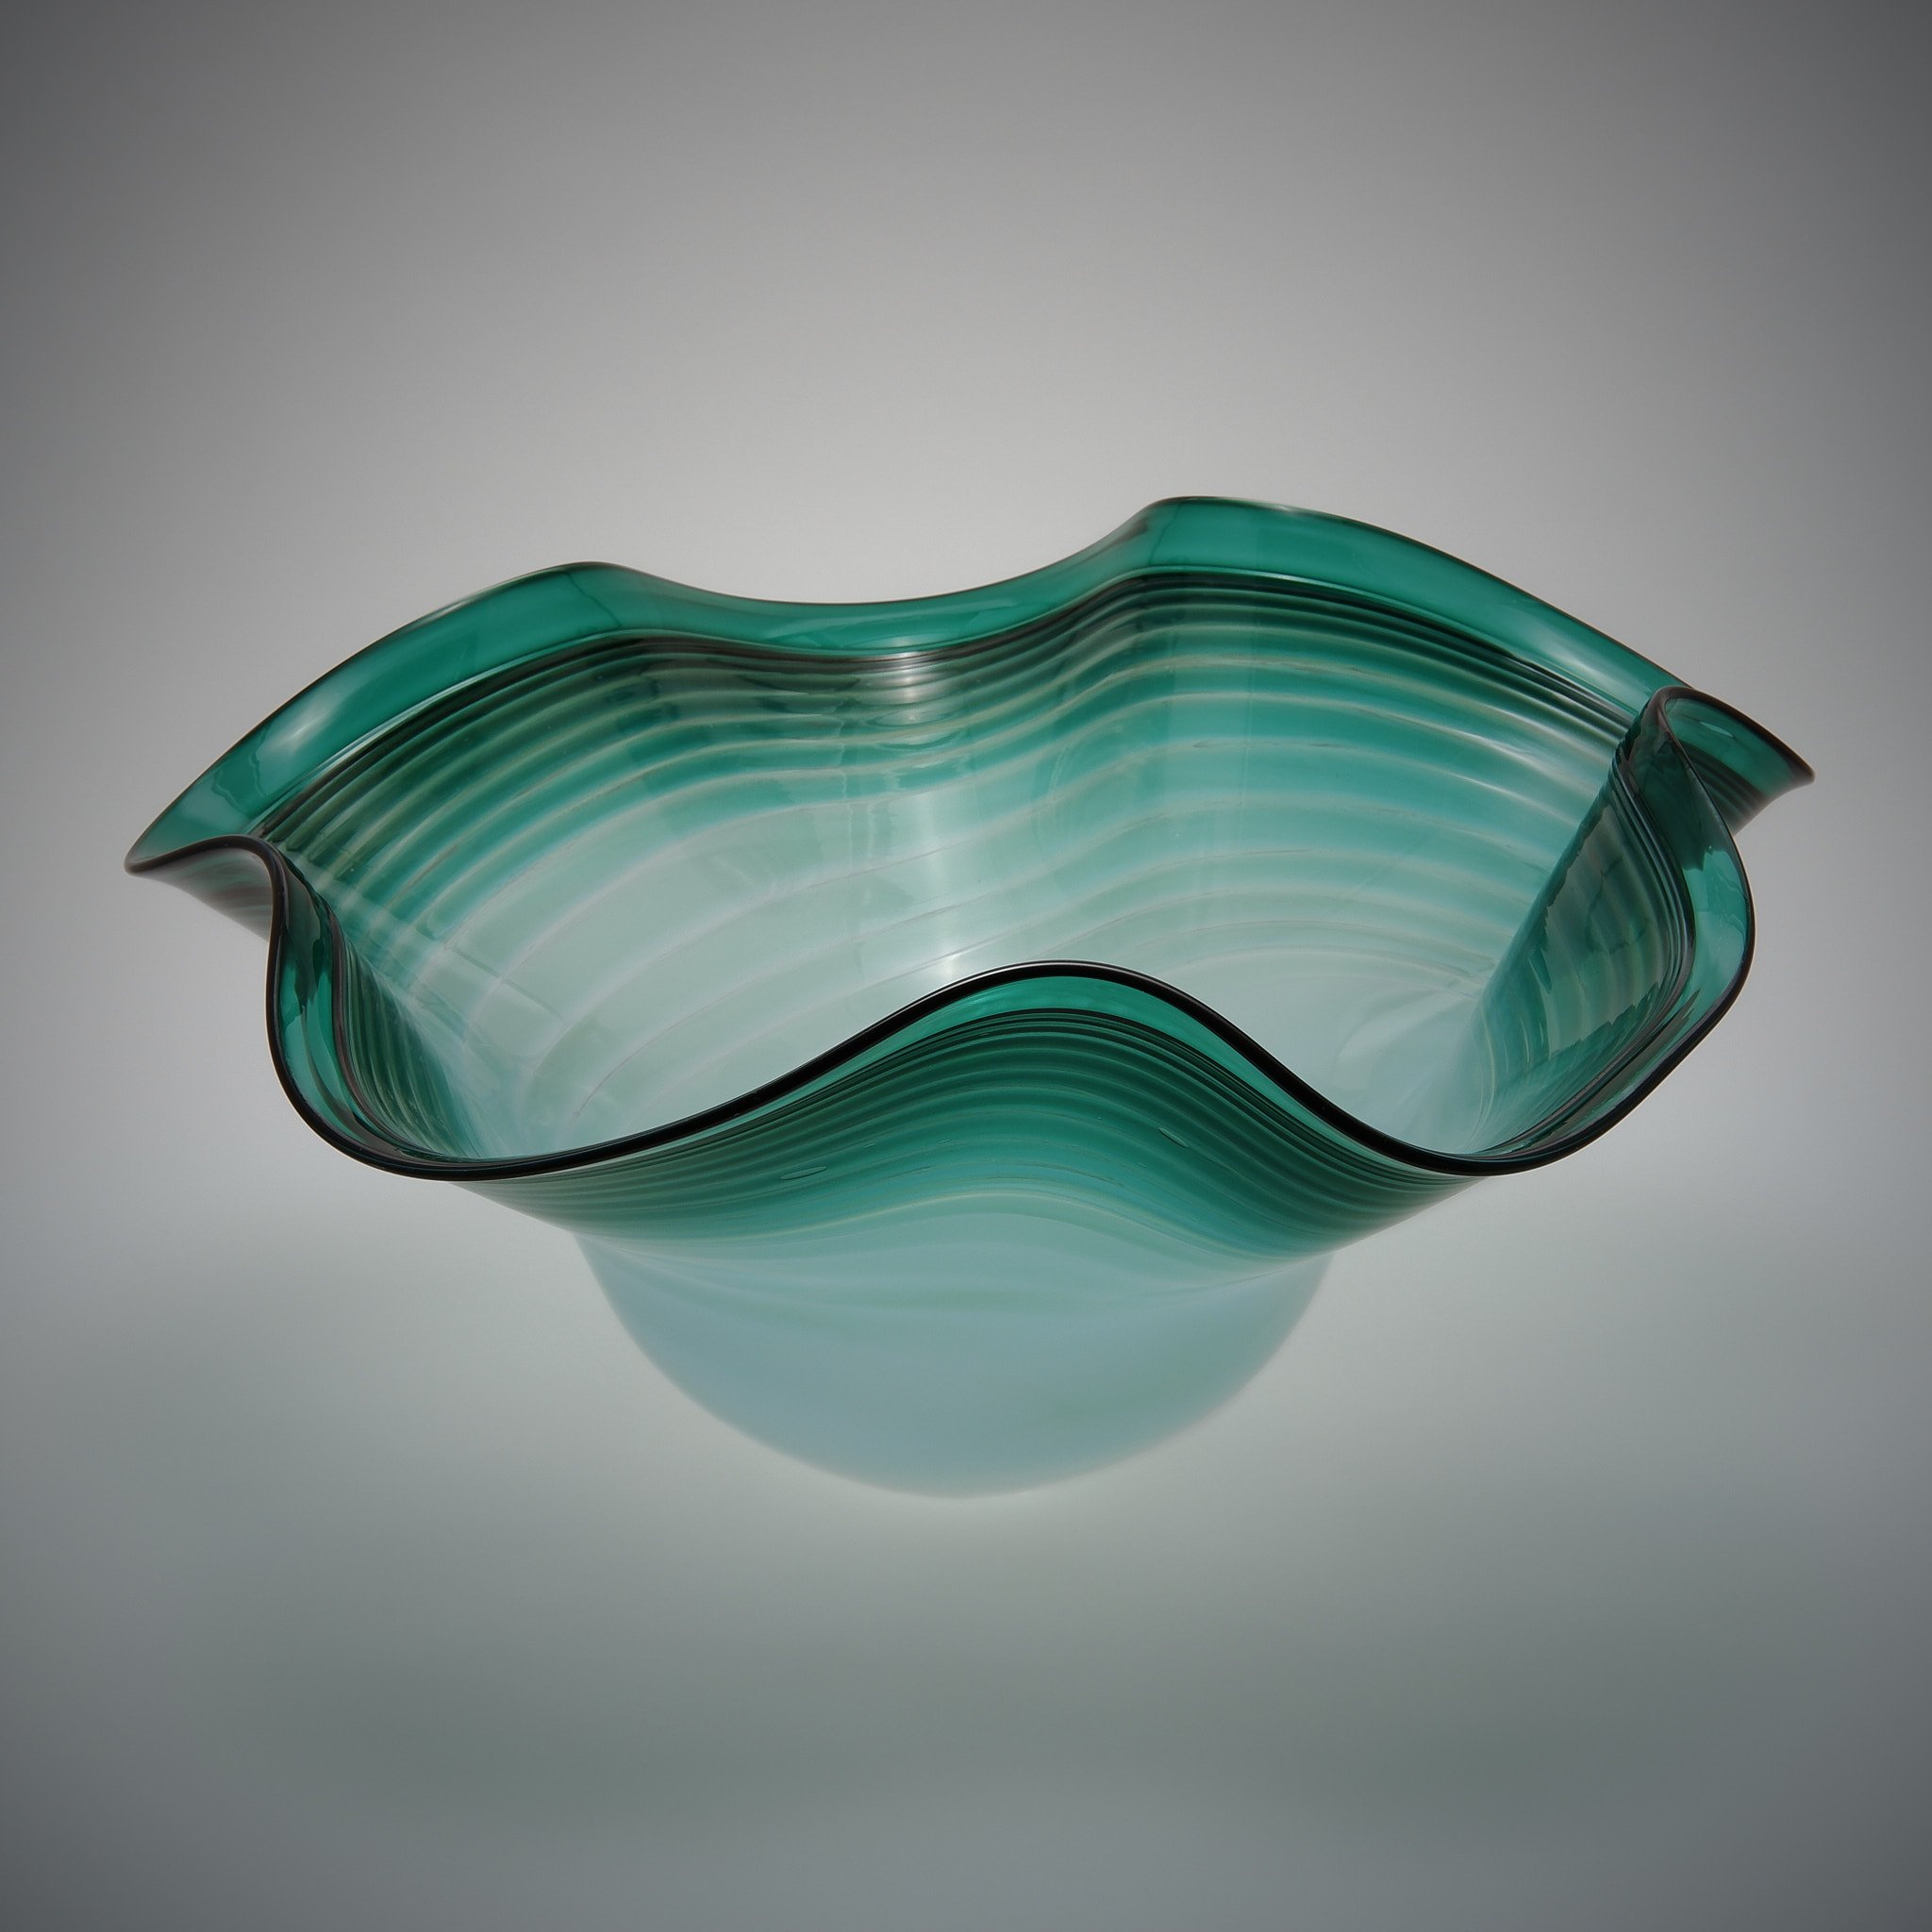 Fascapple Glass Artist: Hayden MacRae